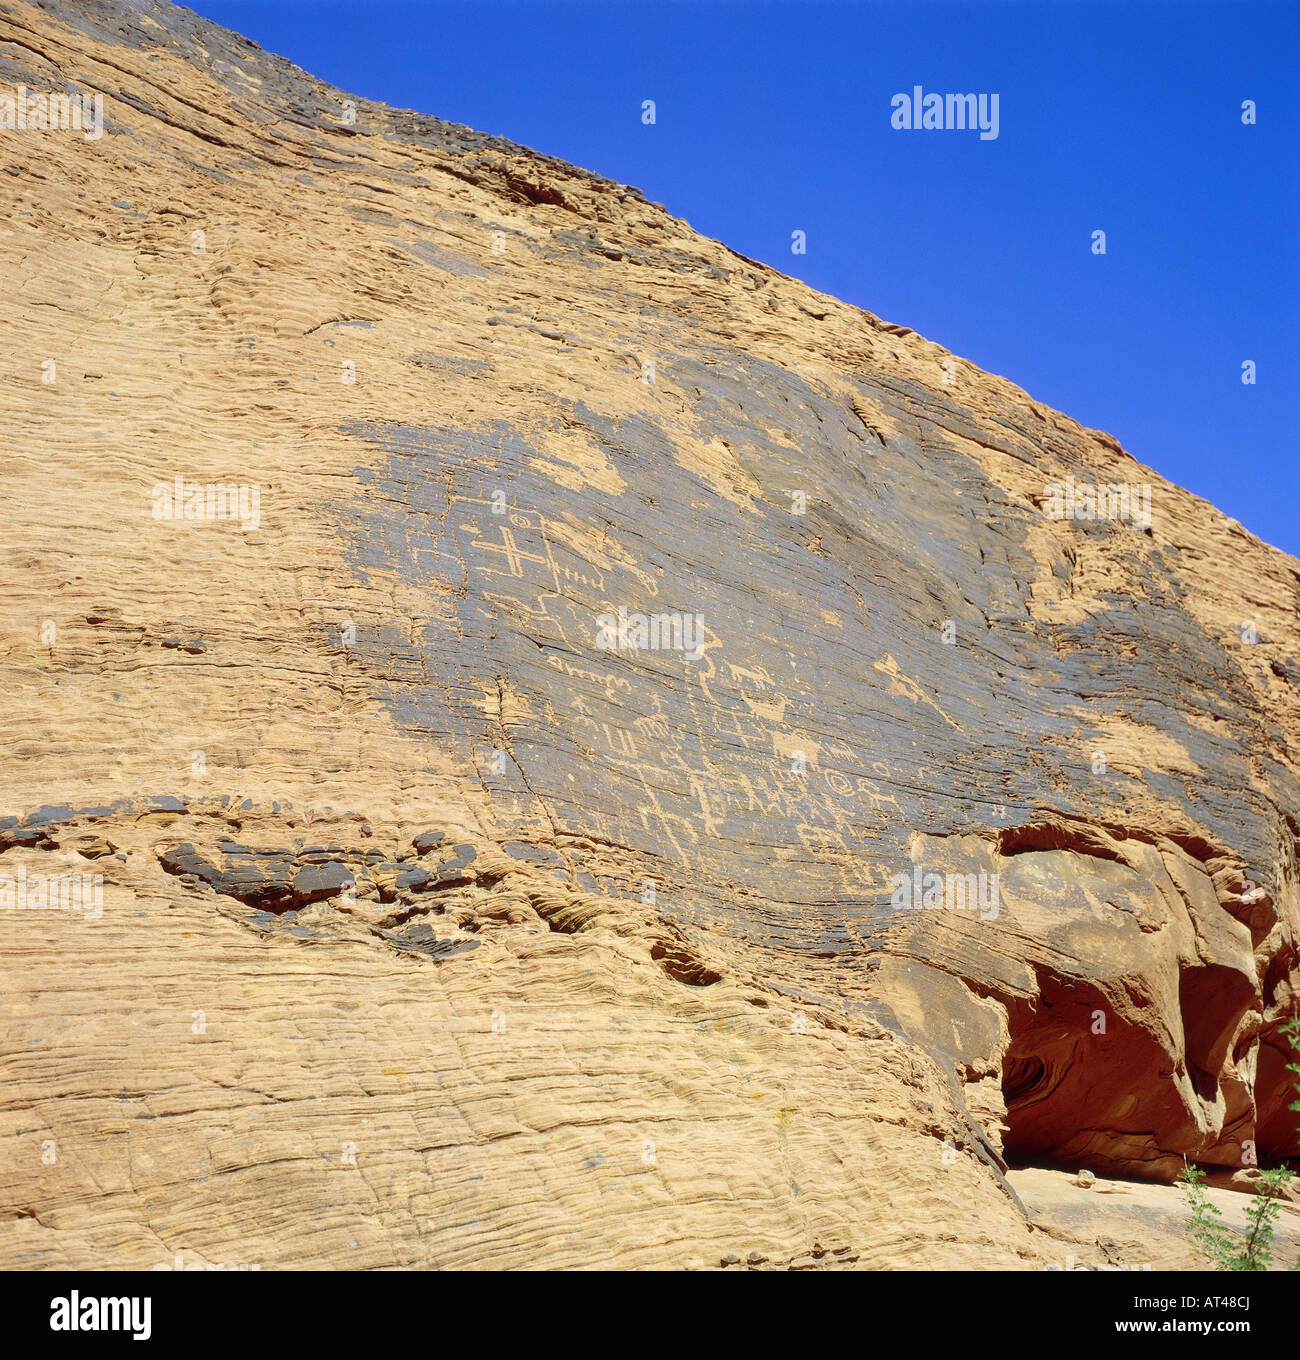 Géographie / voyages, USA, Nevada, Valley of Fire, Atlatl Rock avec petroglyphes, rock, peinture, peint en rouge, Banque D'Images